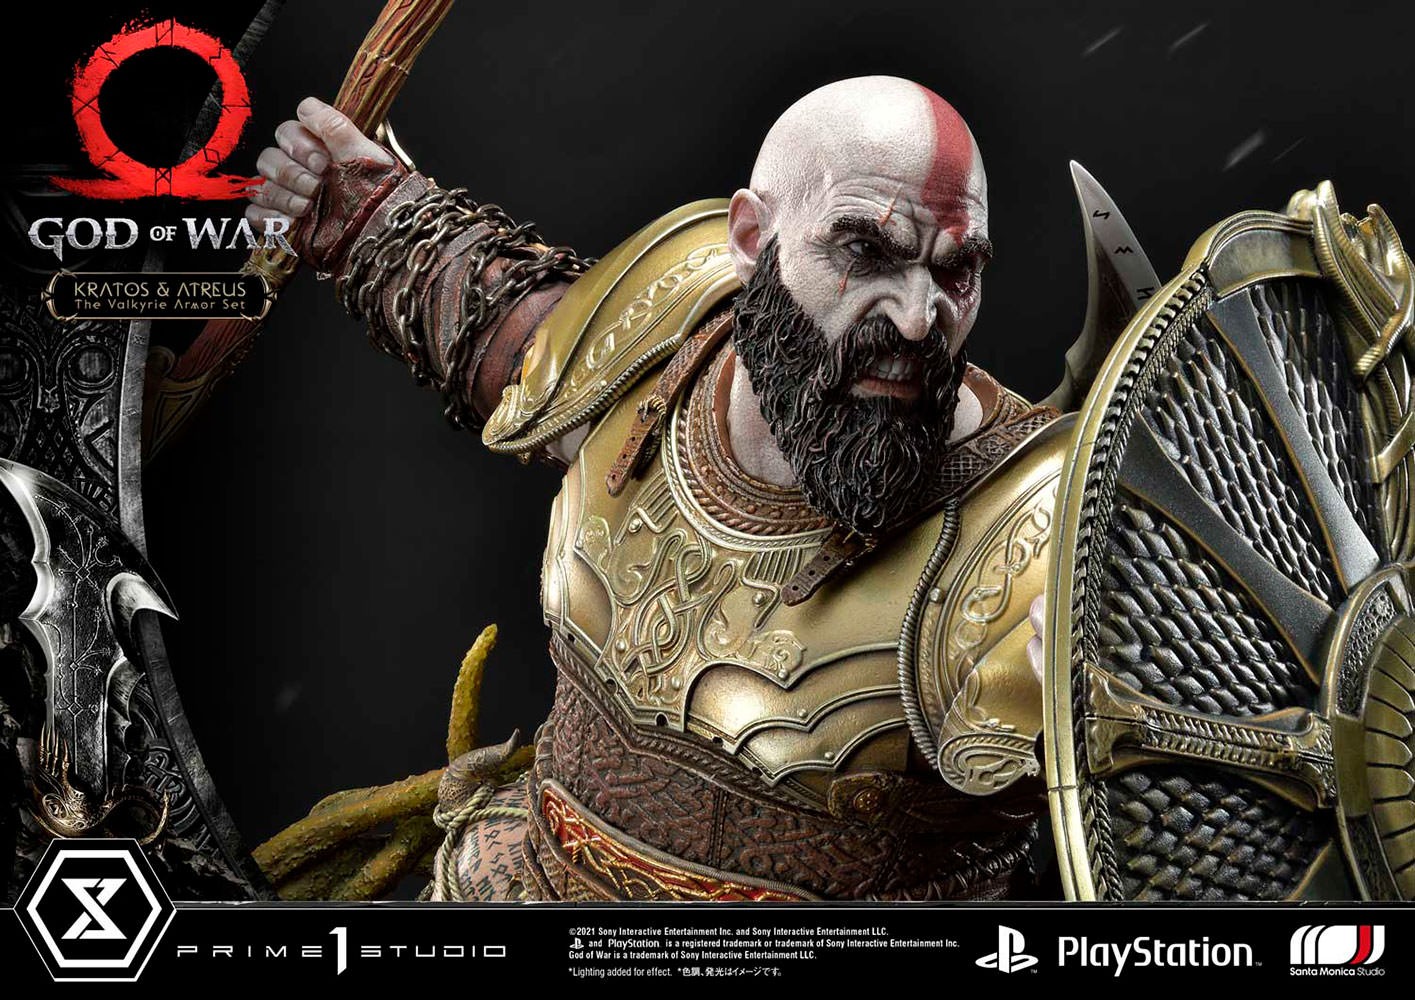 Kratos & Atreus (The Valkyrie Armor Set)